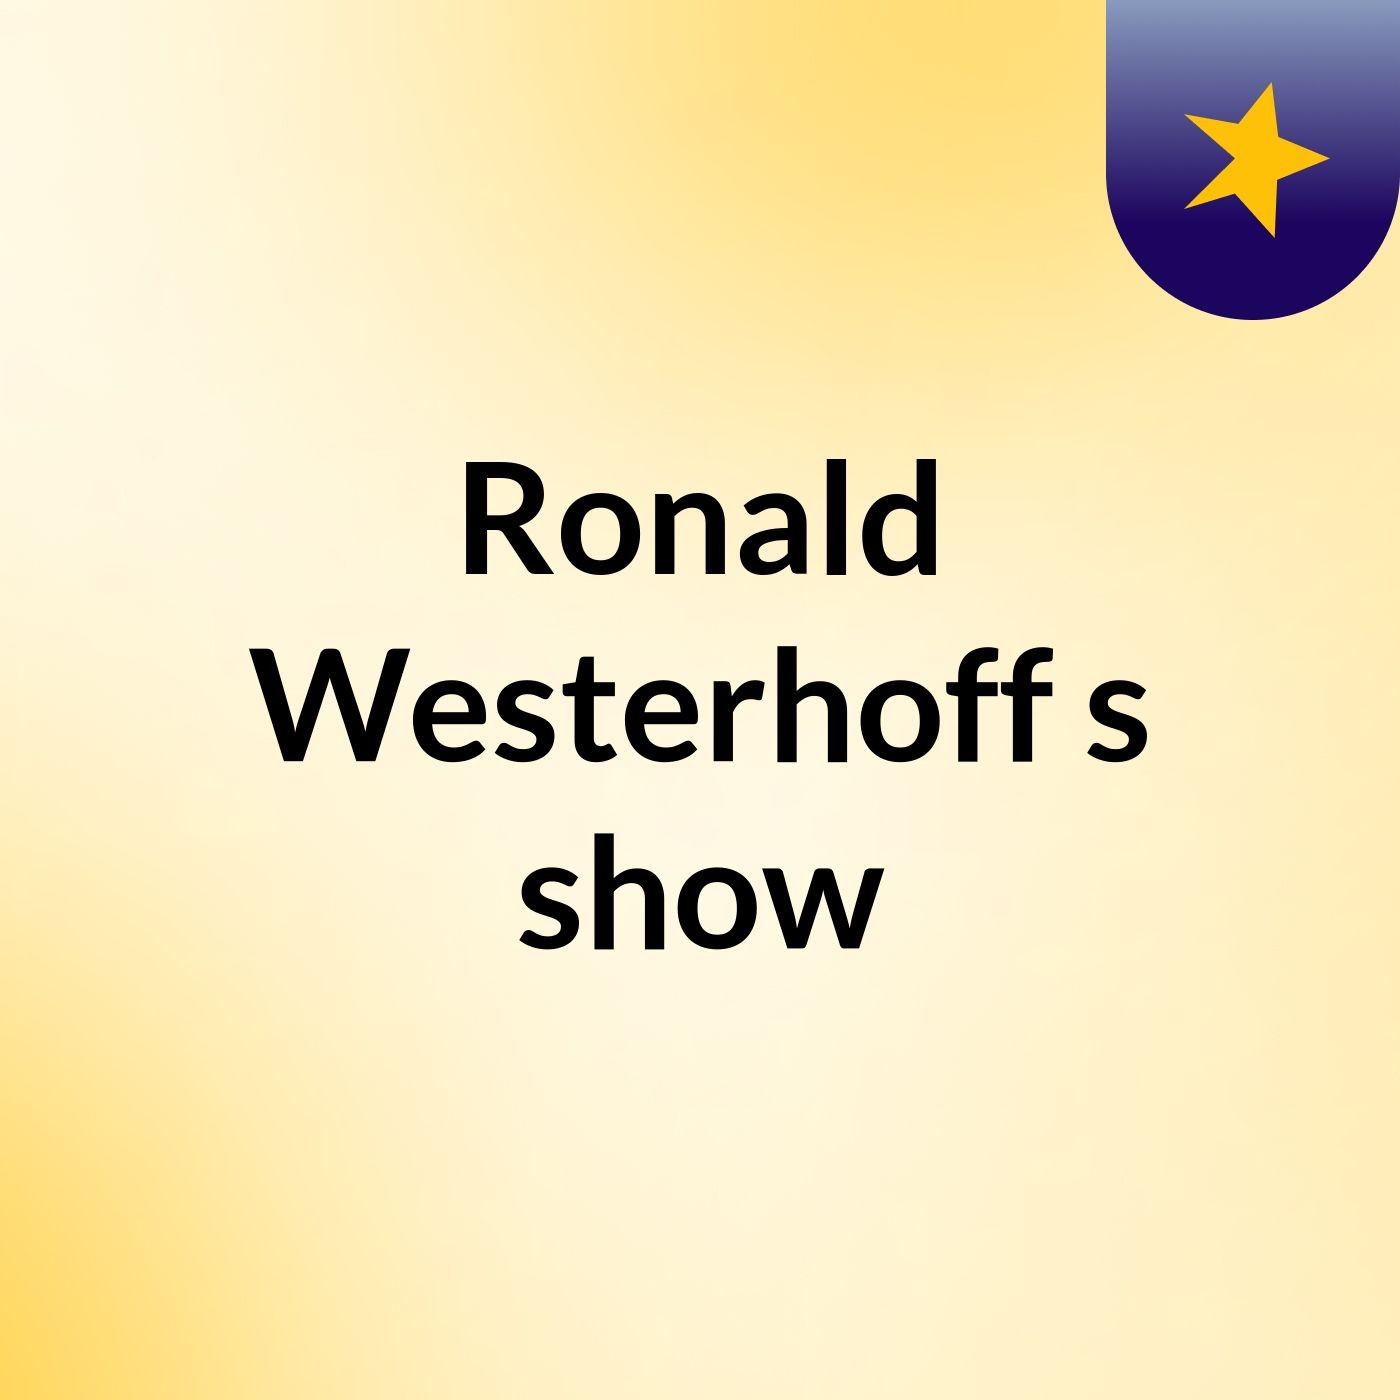 Ronald Westerhoff's show